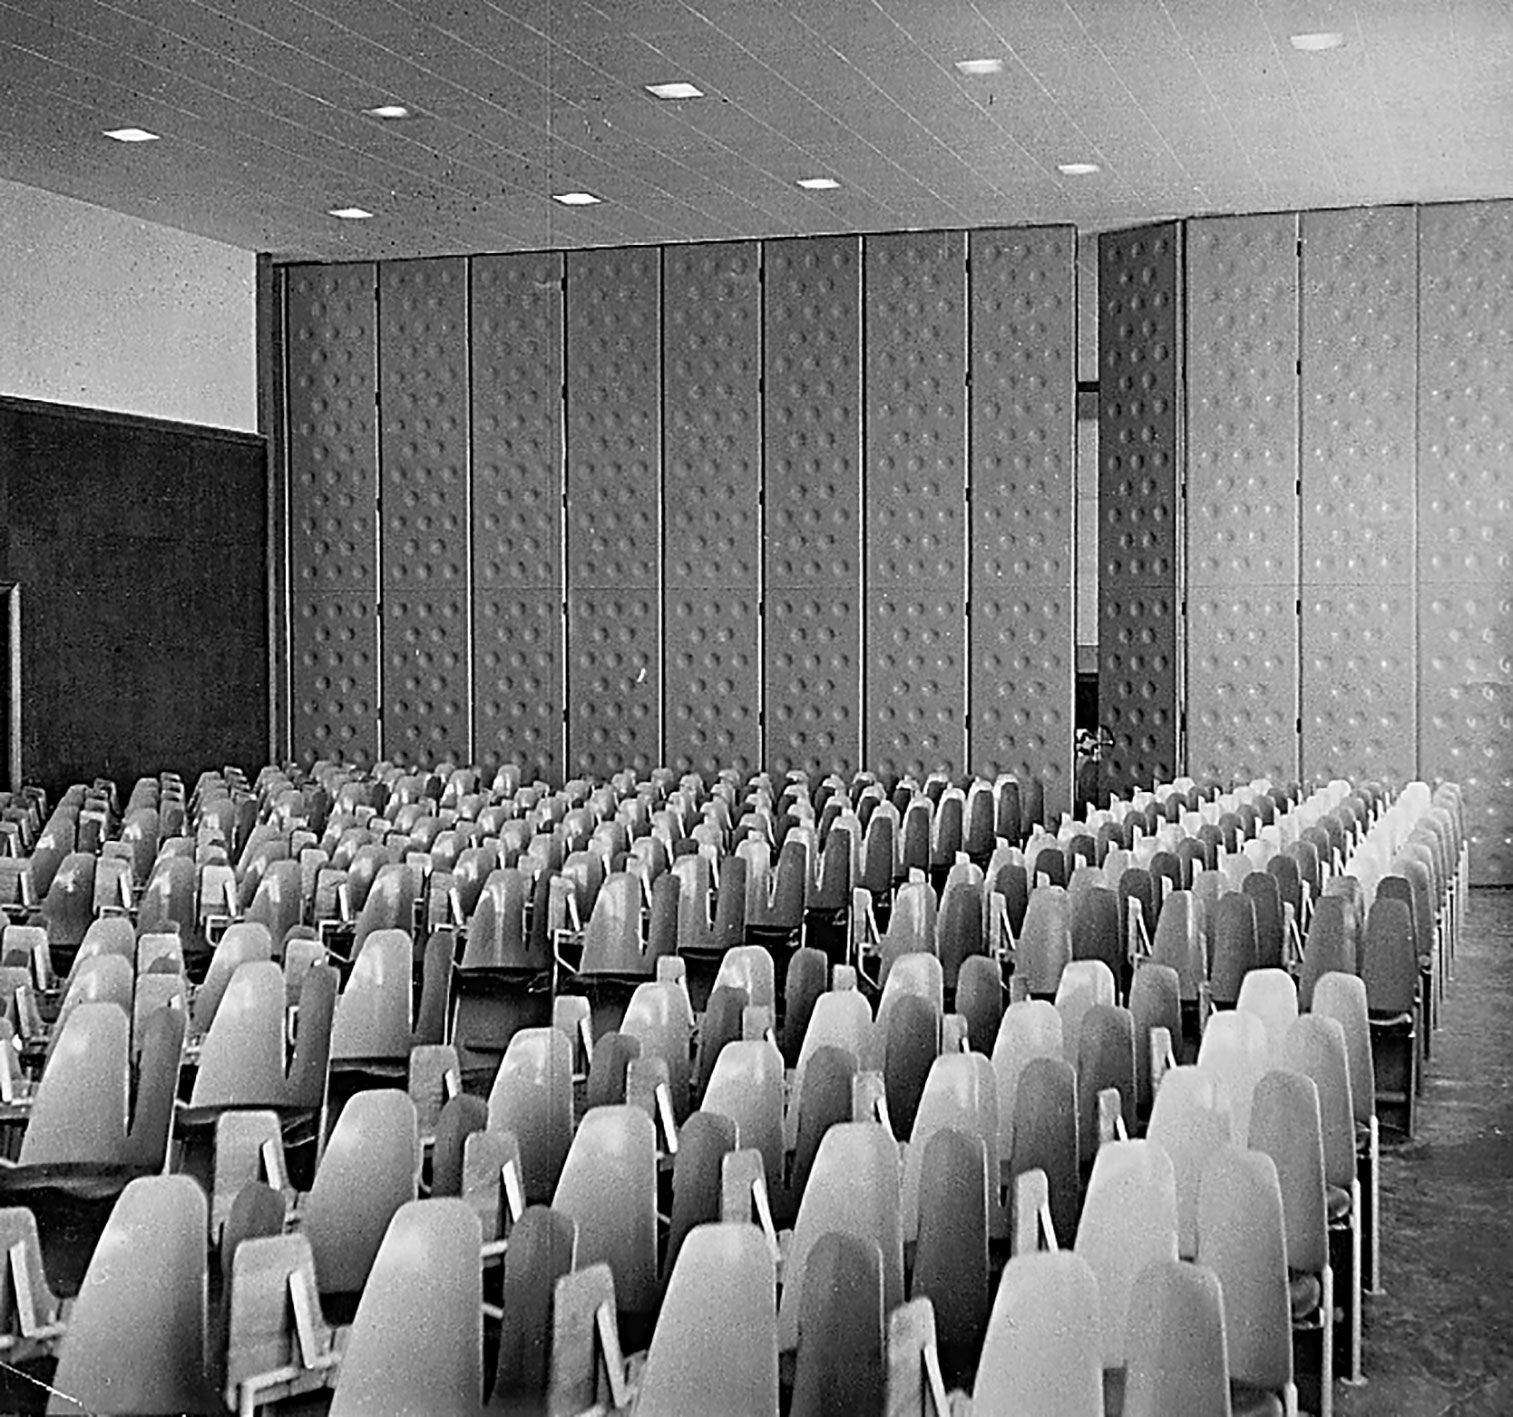 Université d’Aix-Marseille, faculté de droit (F. Pouillon, arch., 1950). Salle de conférences aménagée avec des fauteuils d’amphithéâtre dits Bergères.